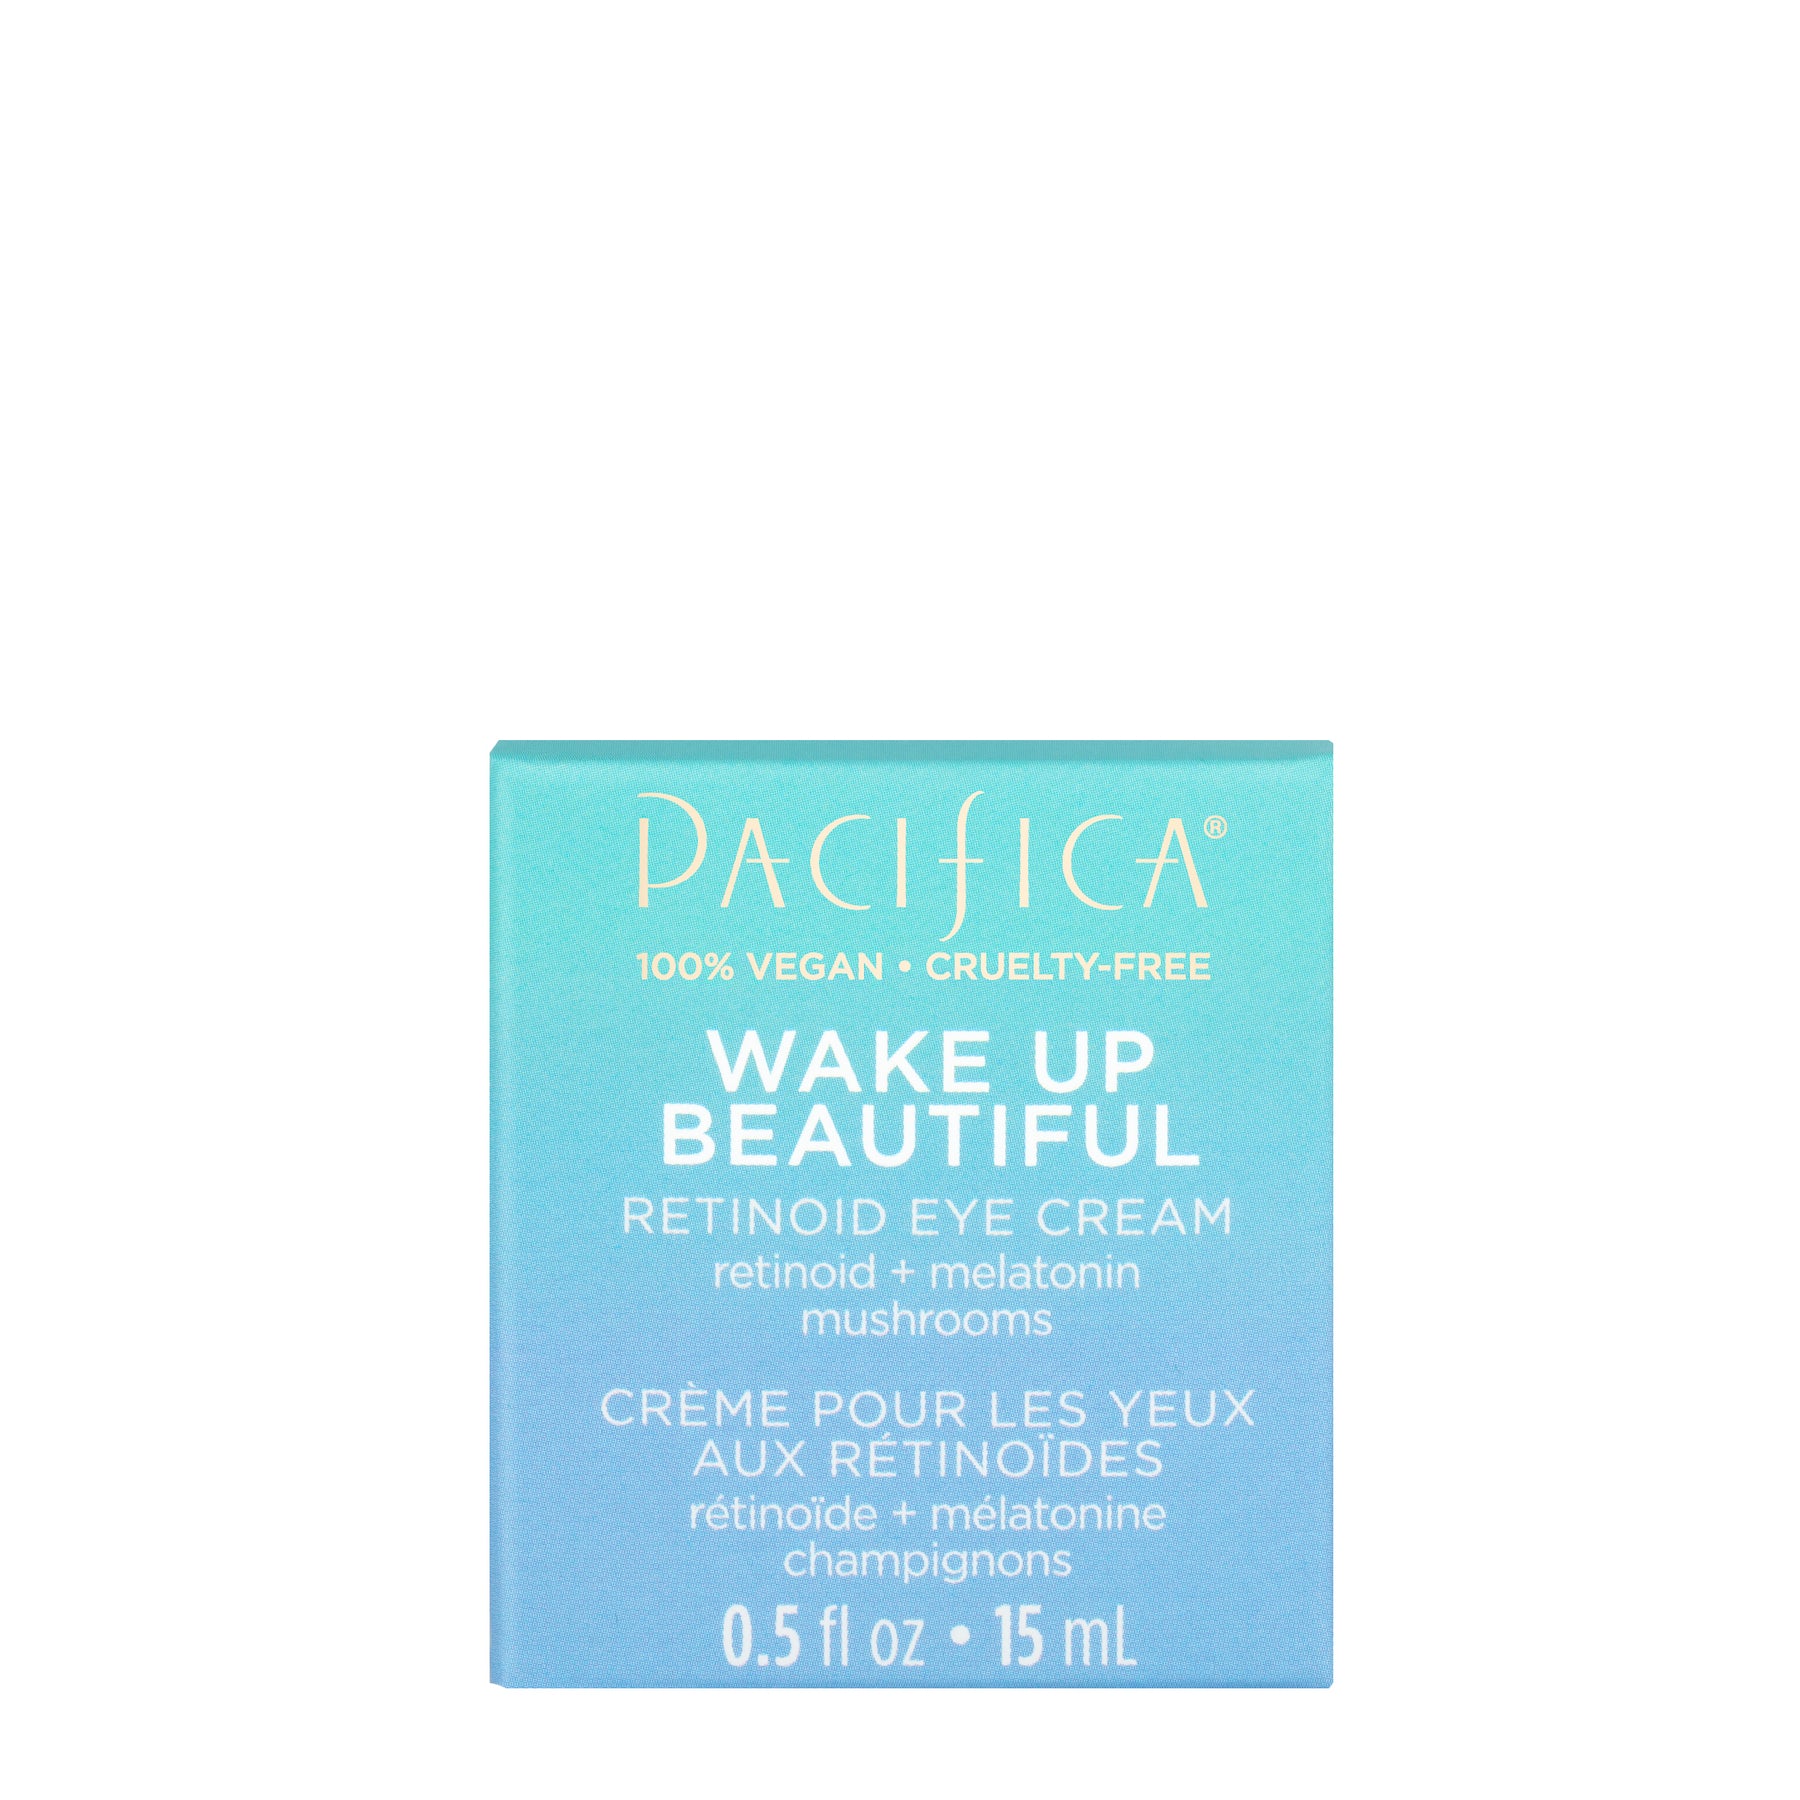 Wake Up Beautiful Retinoid Eye Cream - Skin Care - Pacifica Beauty